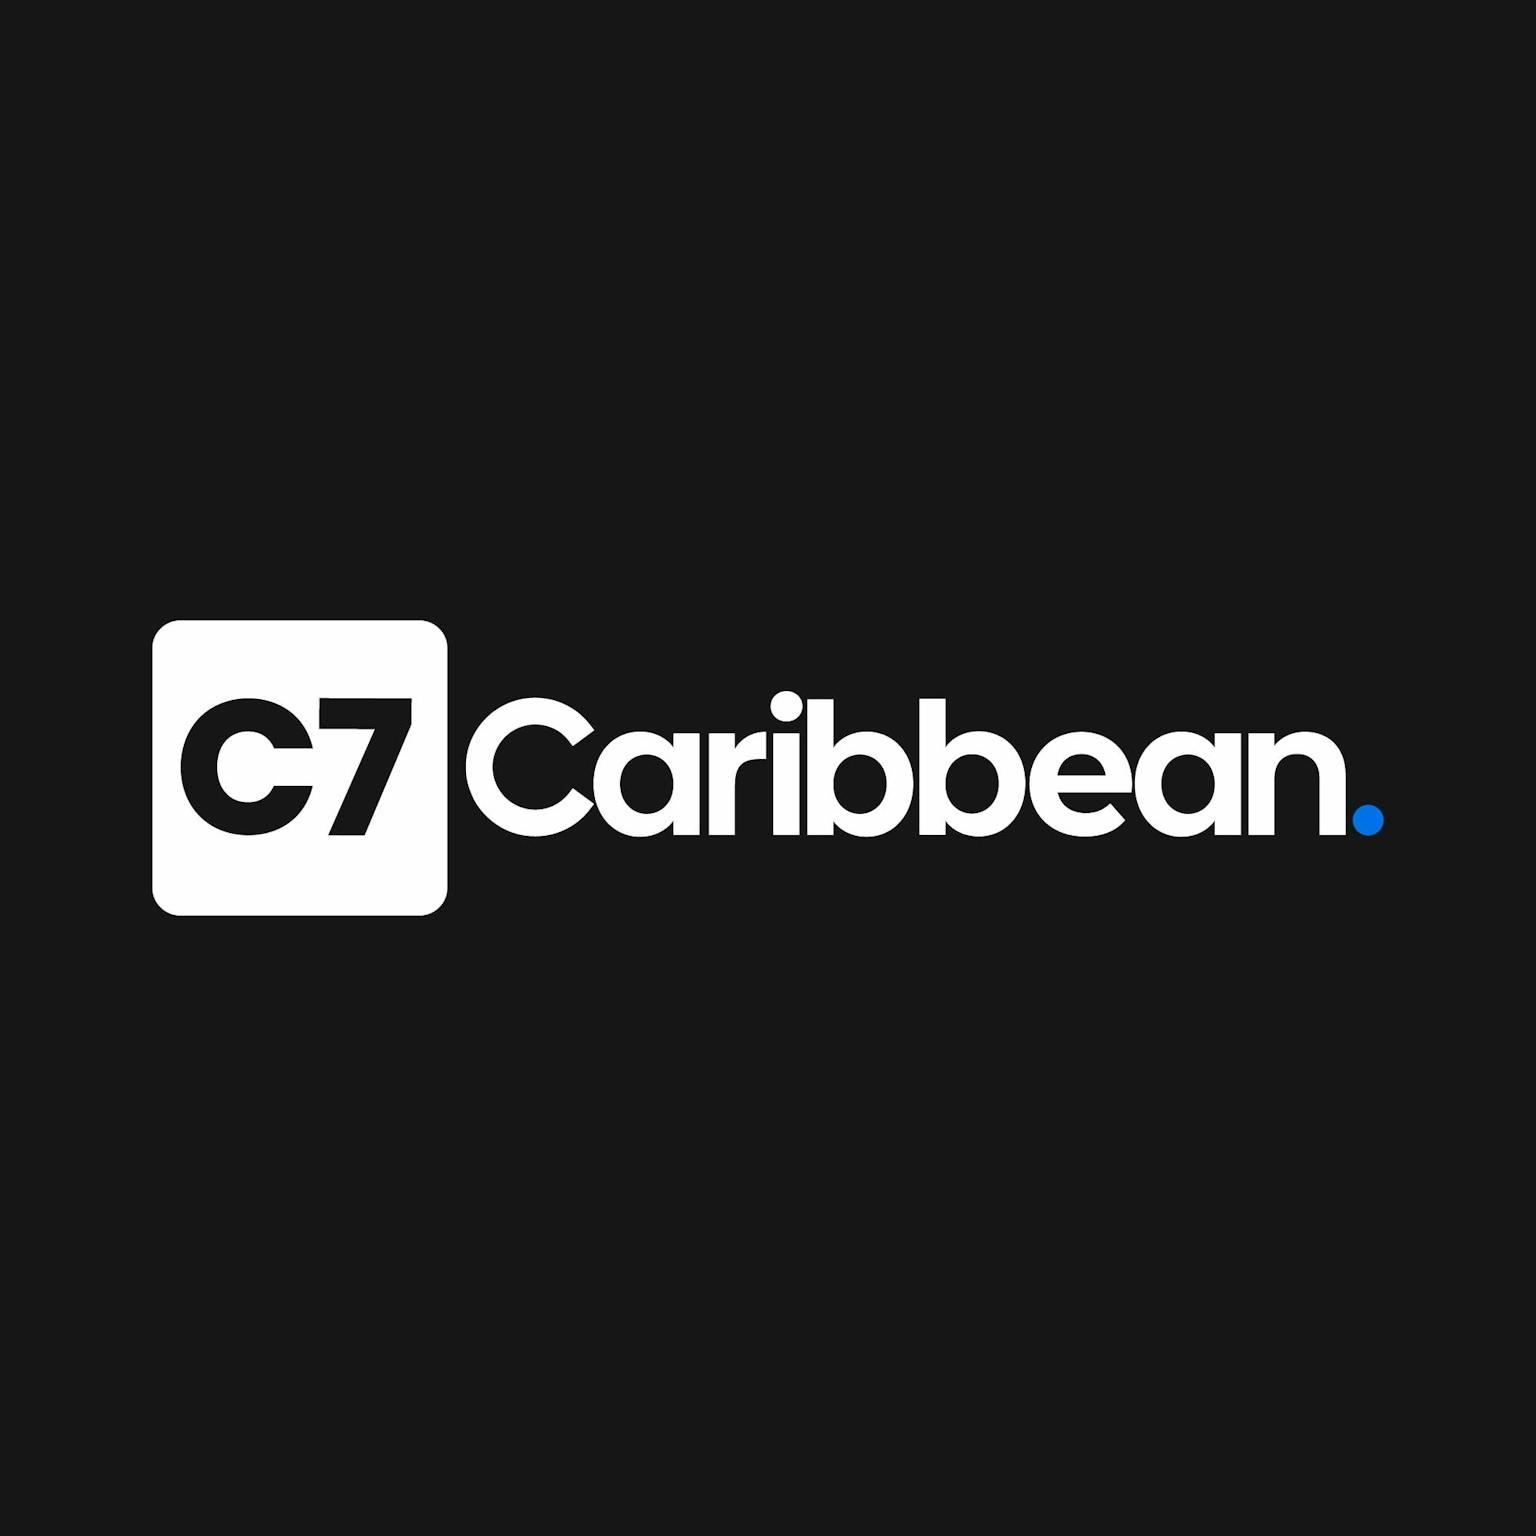 C7 Caribbean logo